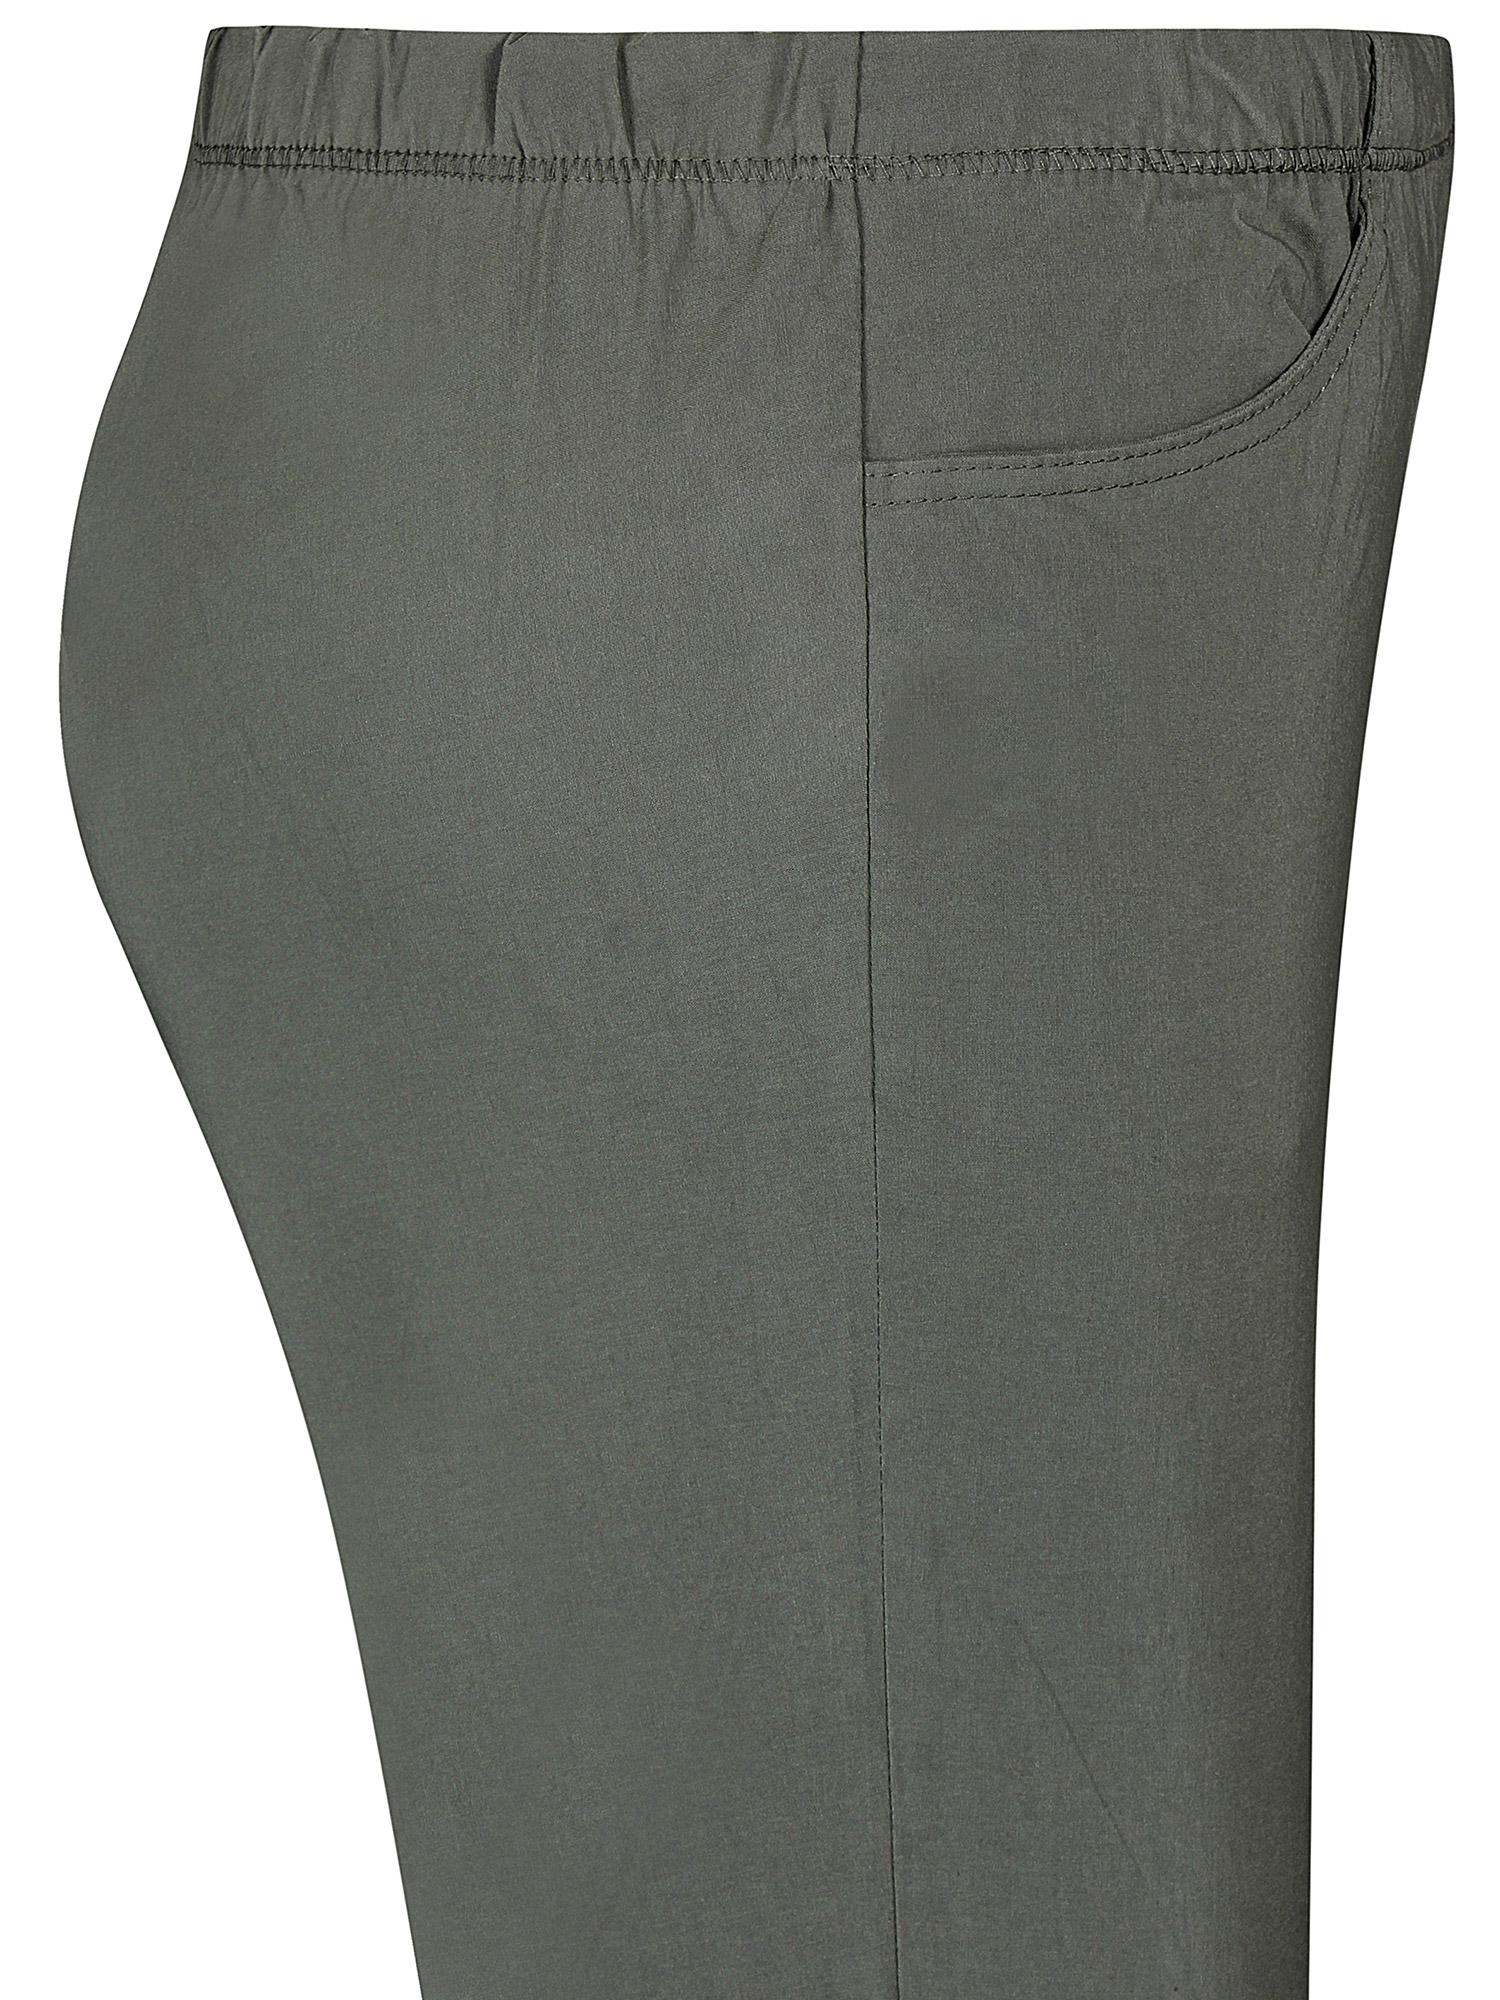 JAZZY - Grønne bukser fra Zhenzi